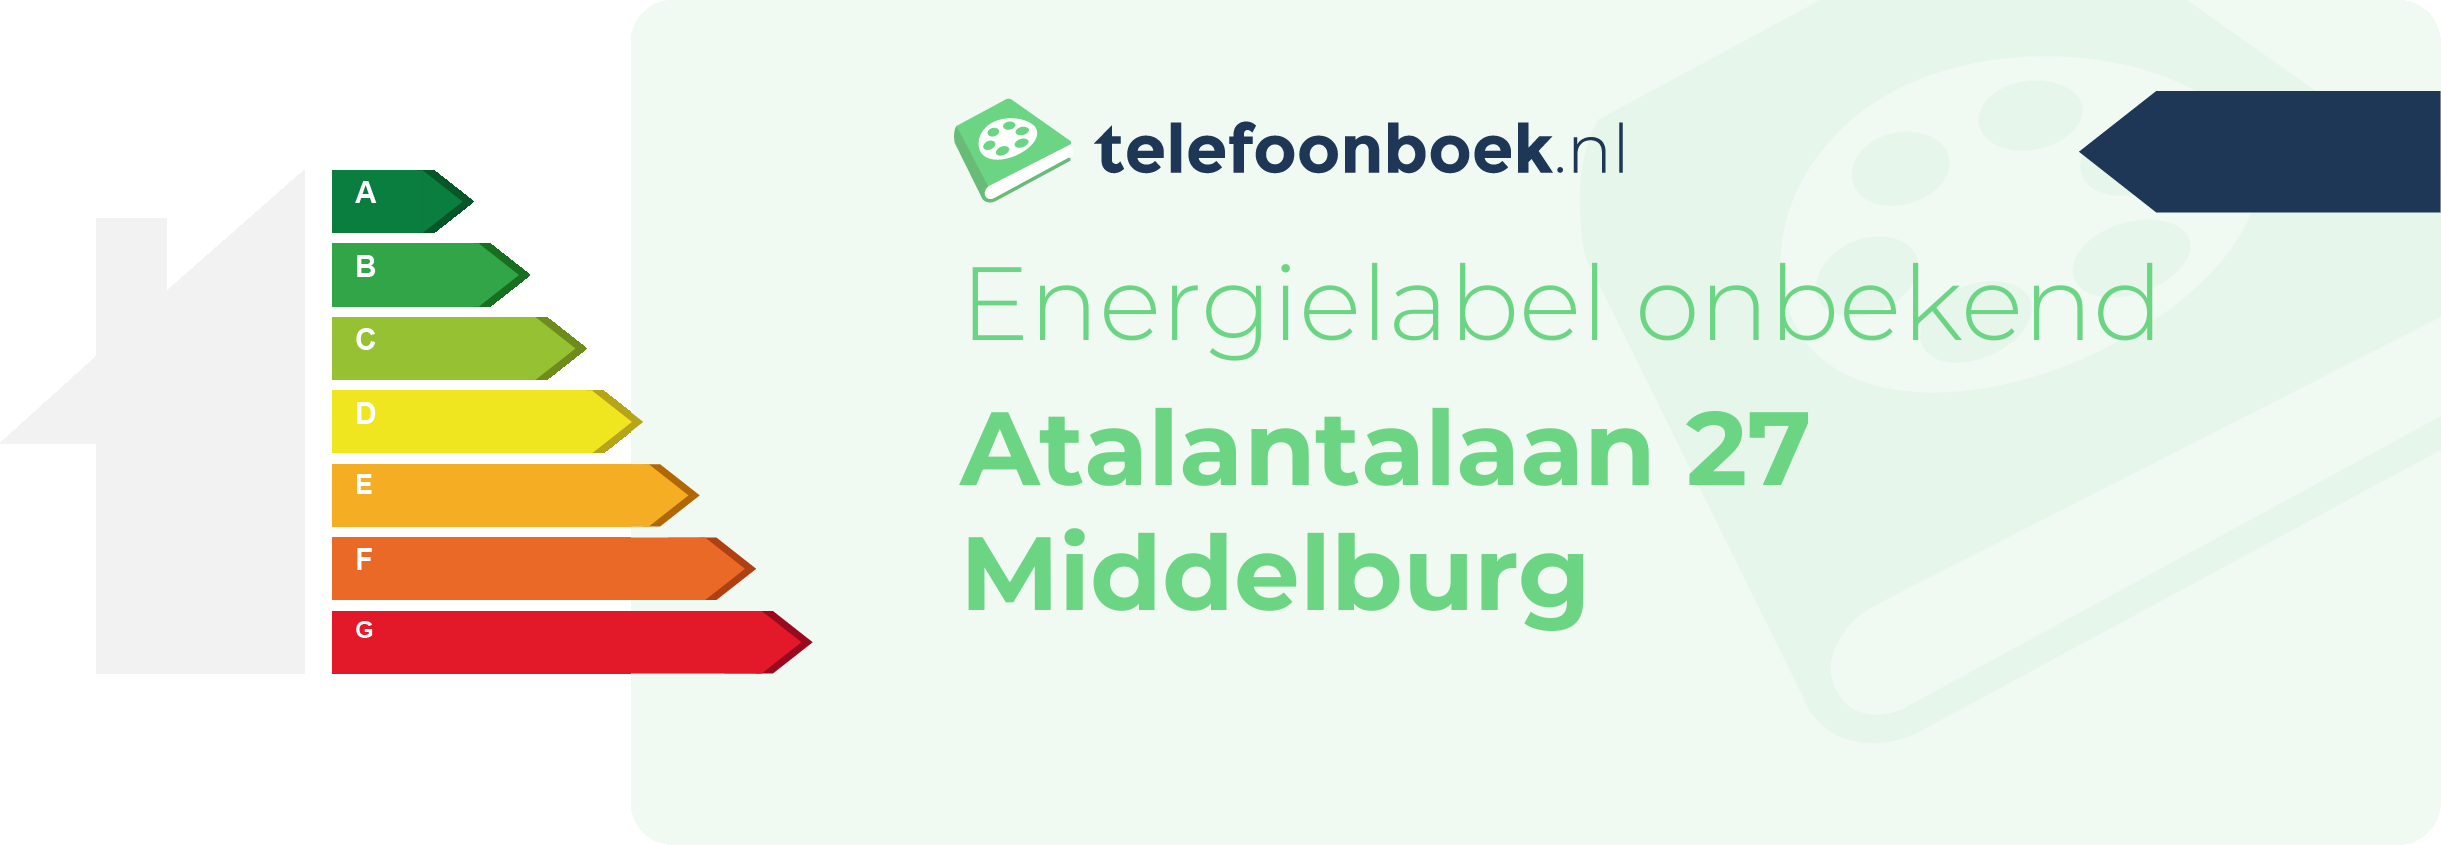 Energielabel Atalantalaan 27 Middelburg